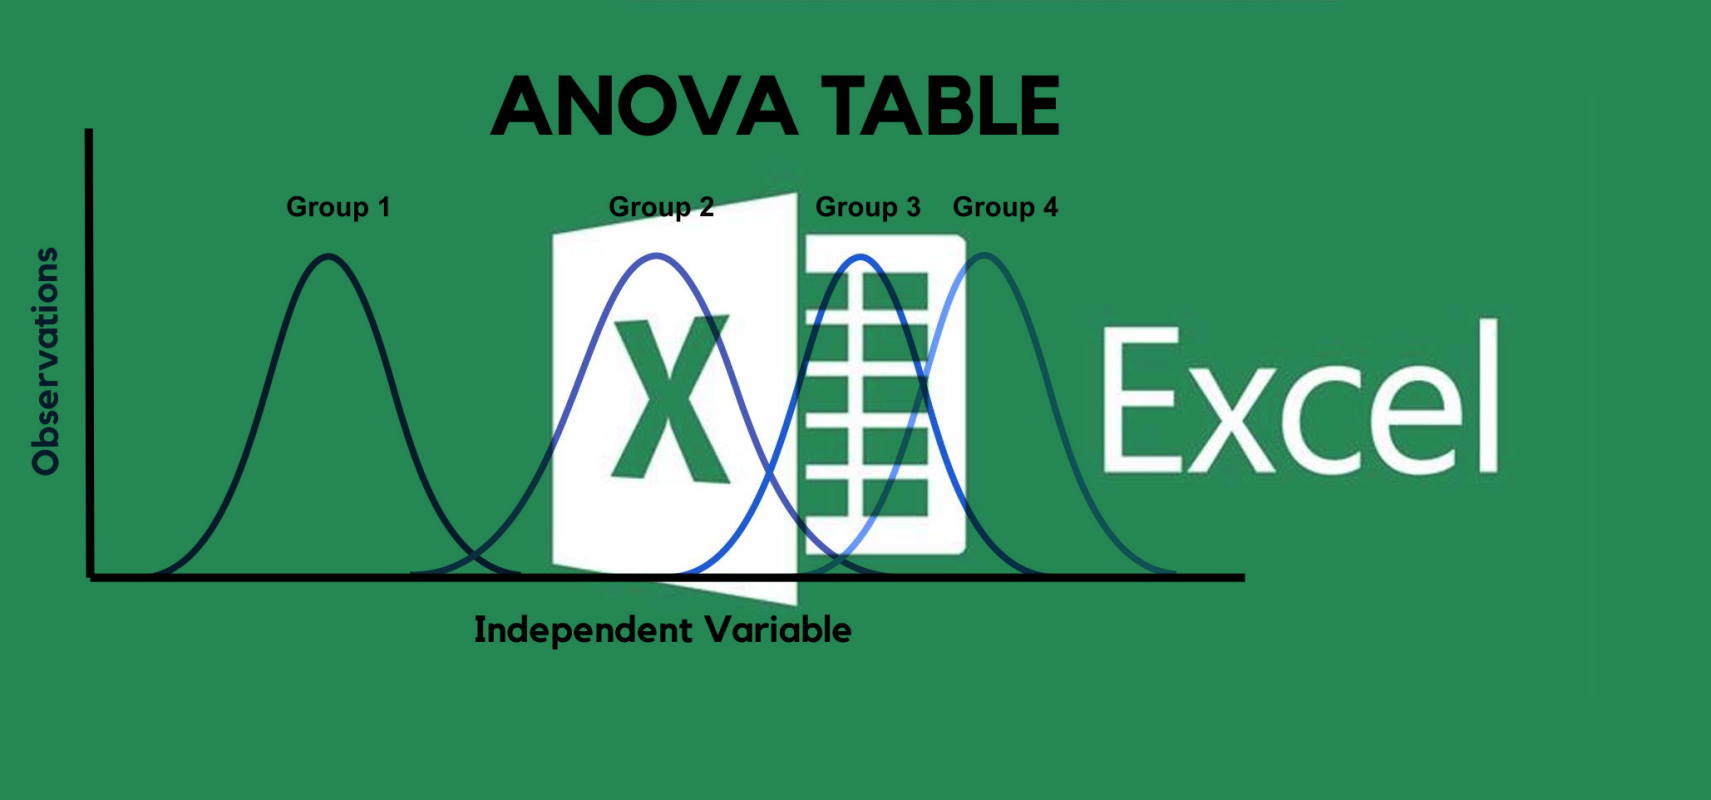 آنالیز واریانس یک طرفه در اکسل anova table